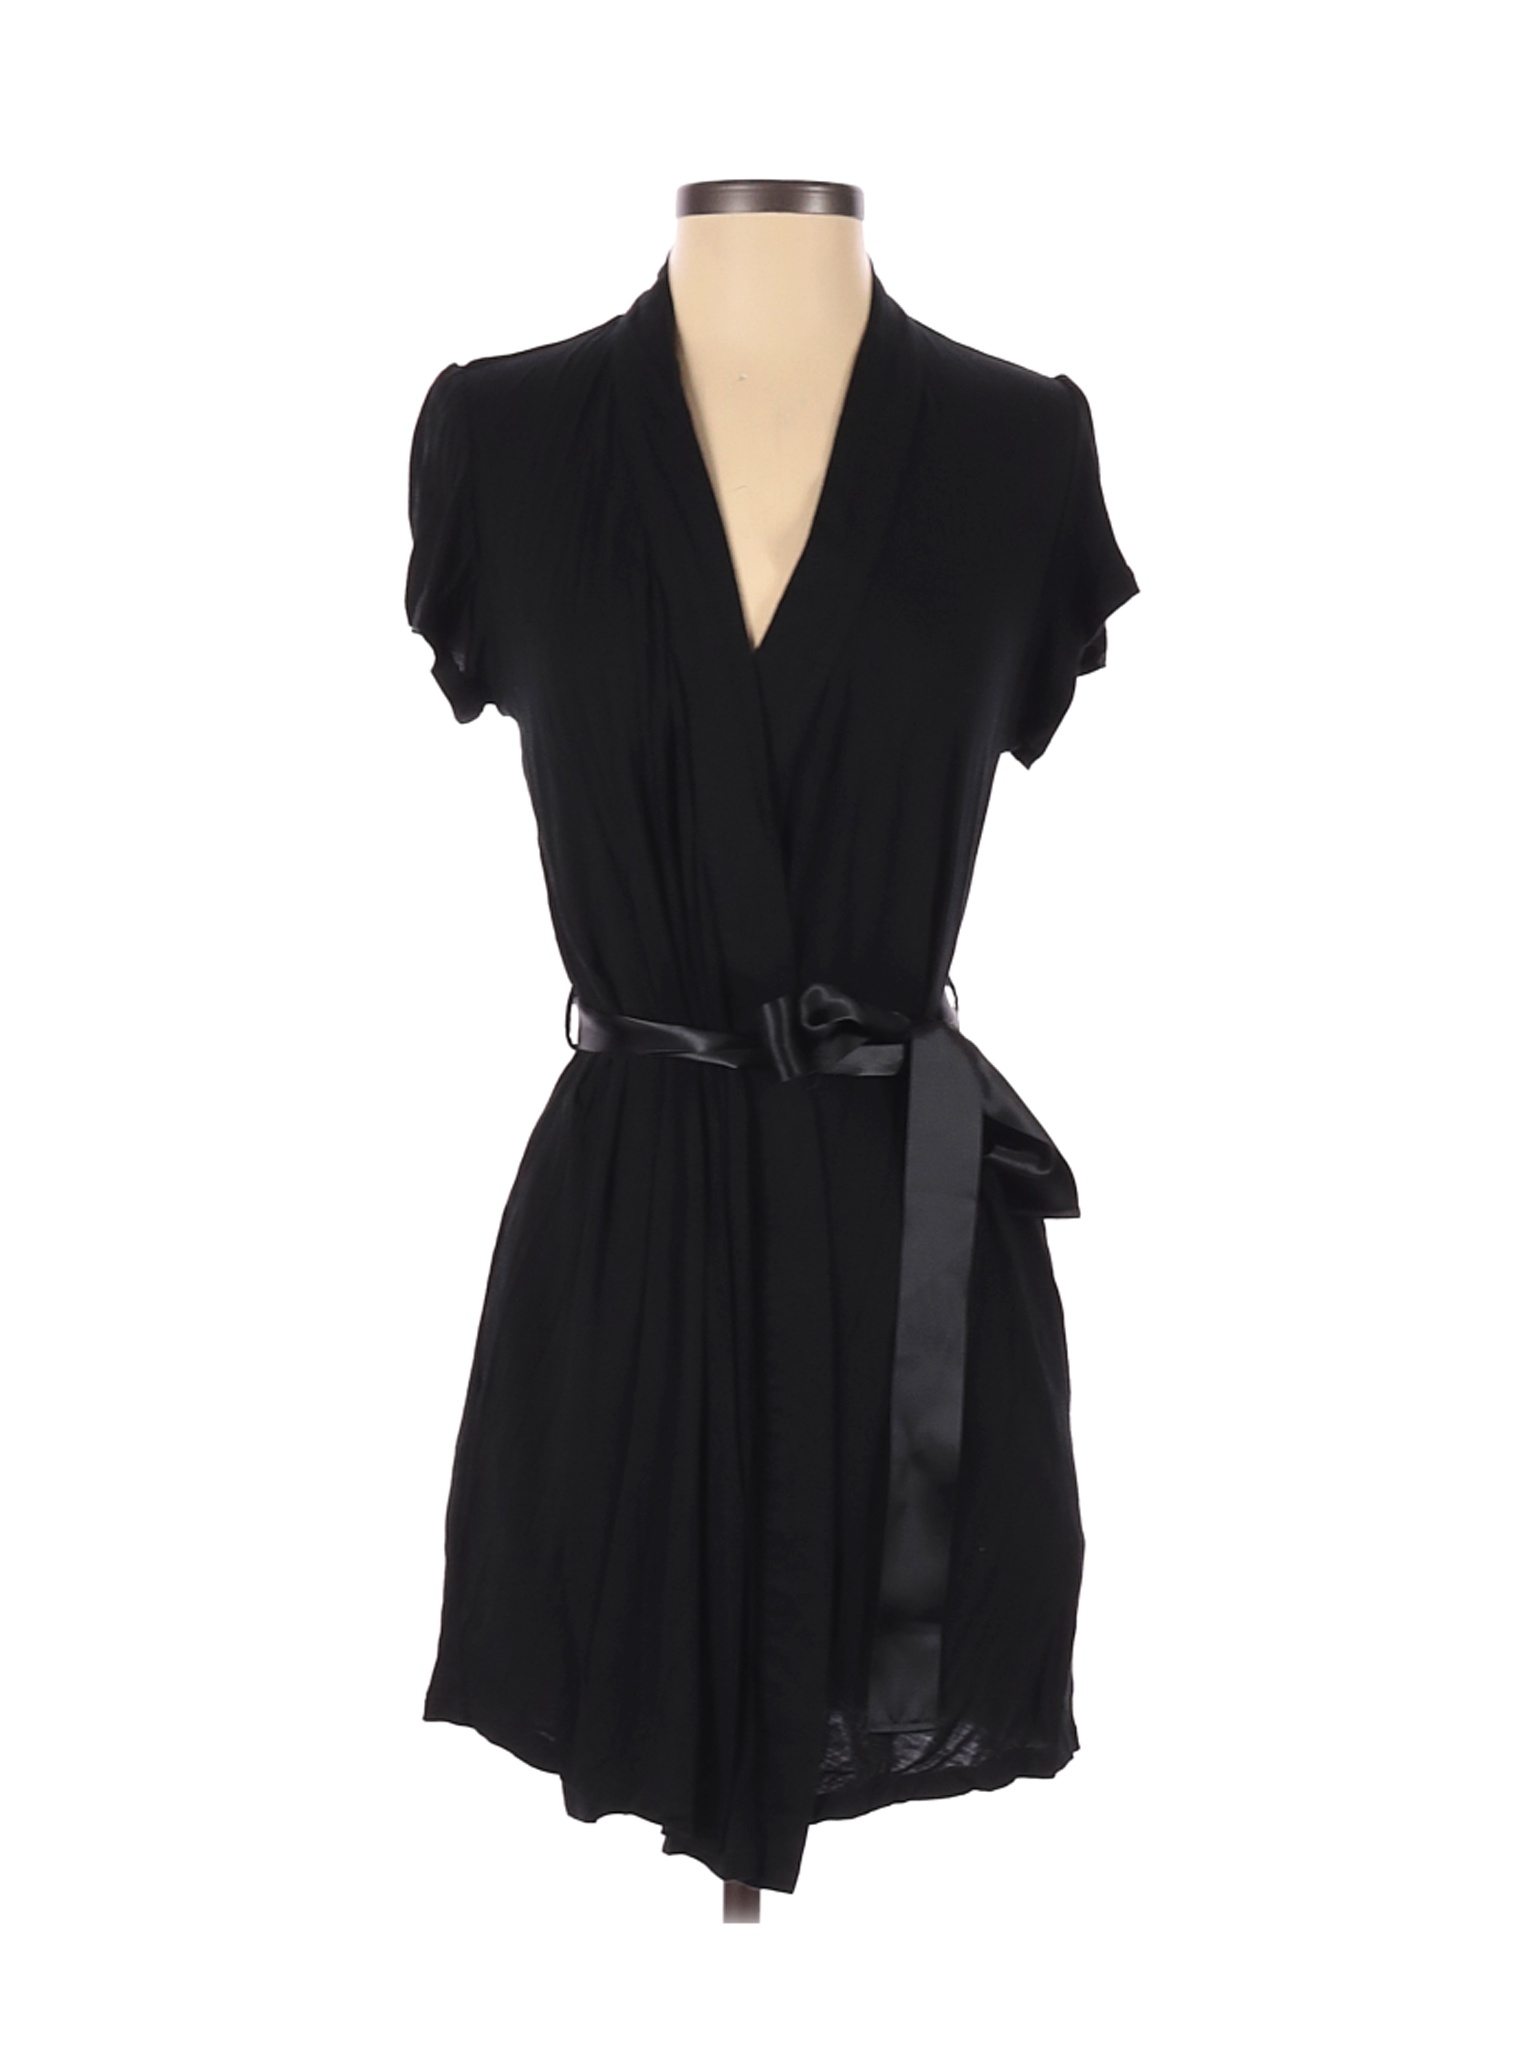 Betsey Johnson Women Black Cocktail Dress S | eBay